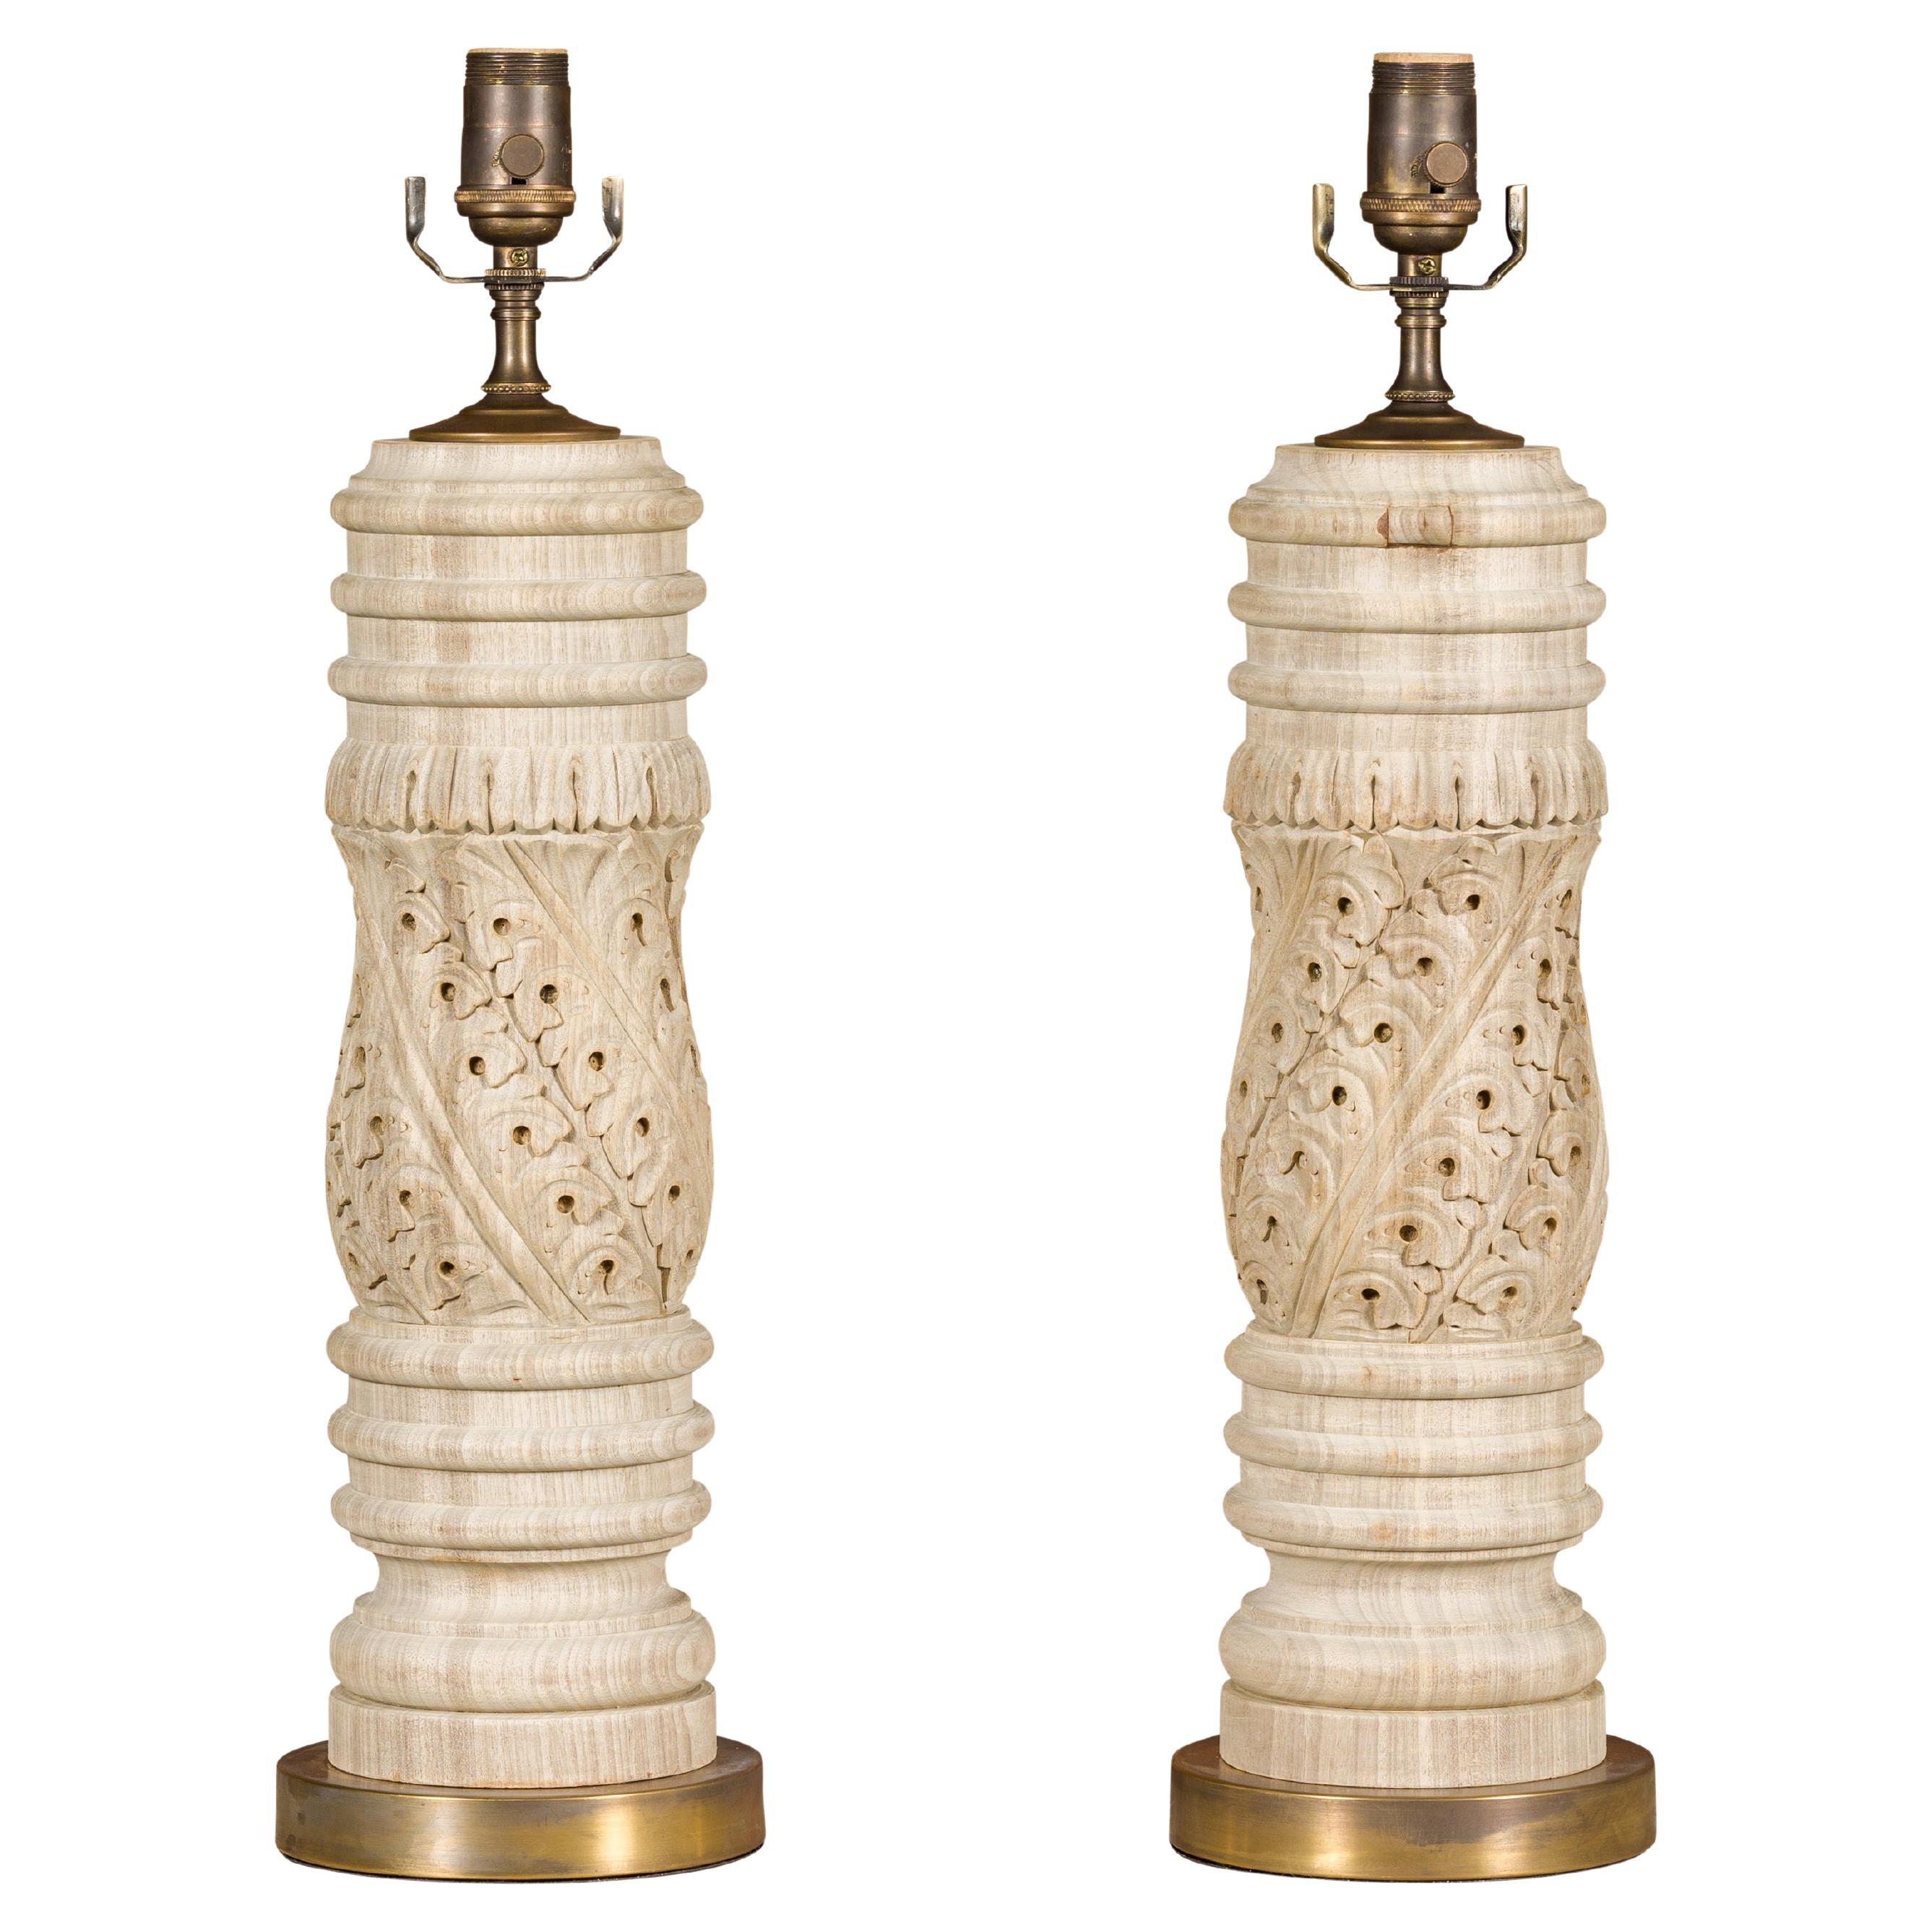 Englische geschnitzte Holzfragmente des 19. Jahrhunderts, die zu US- verdrahteten Tischlampen verarbeitet wurden